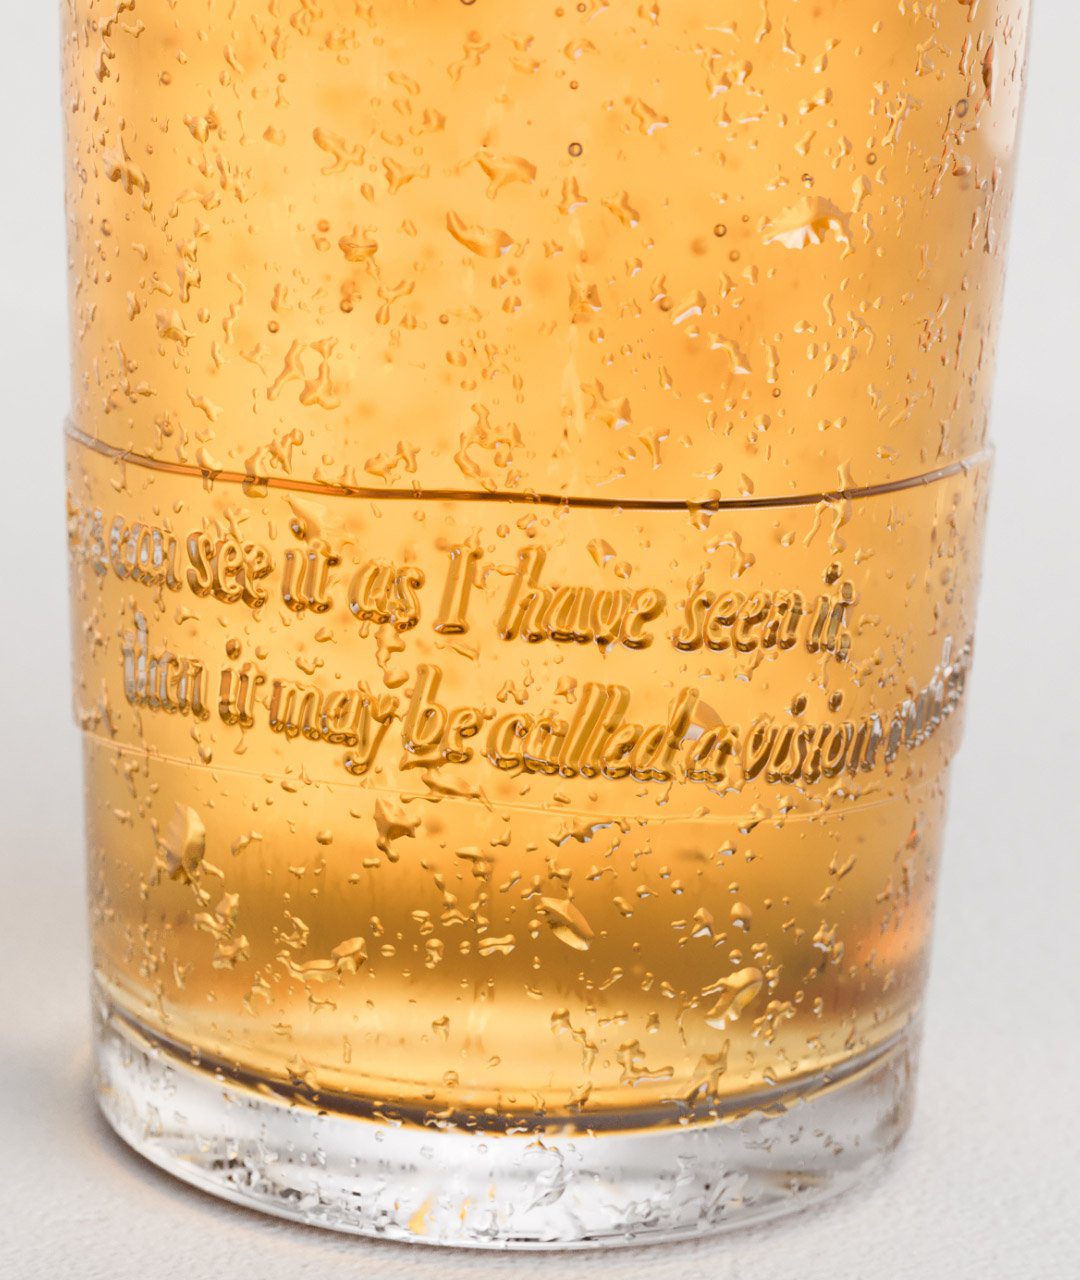 Custom pint glass with beer in Utopian